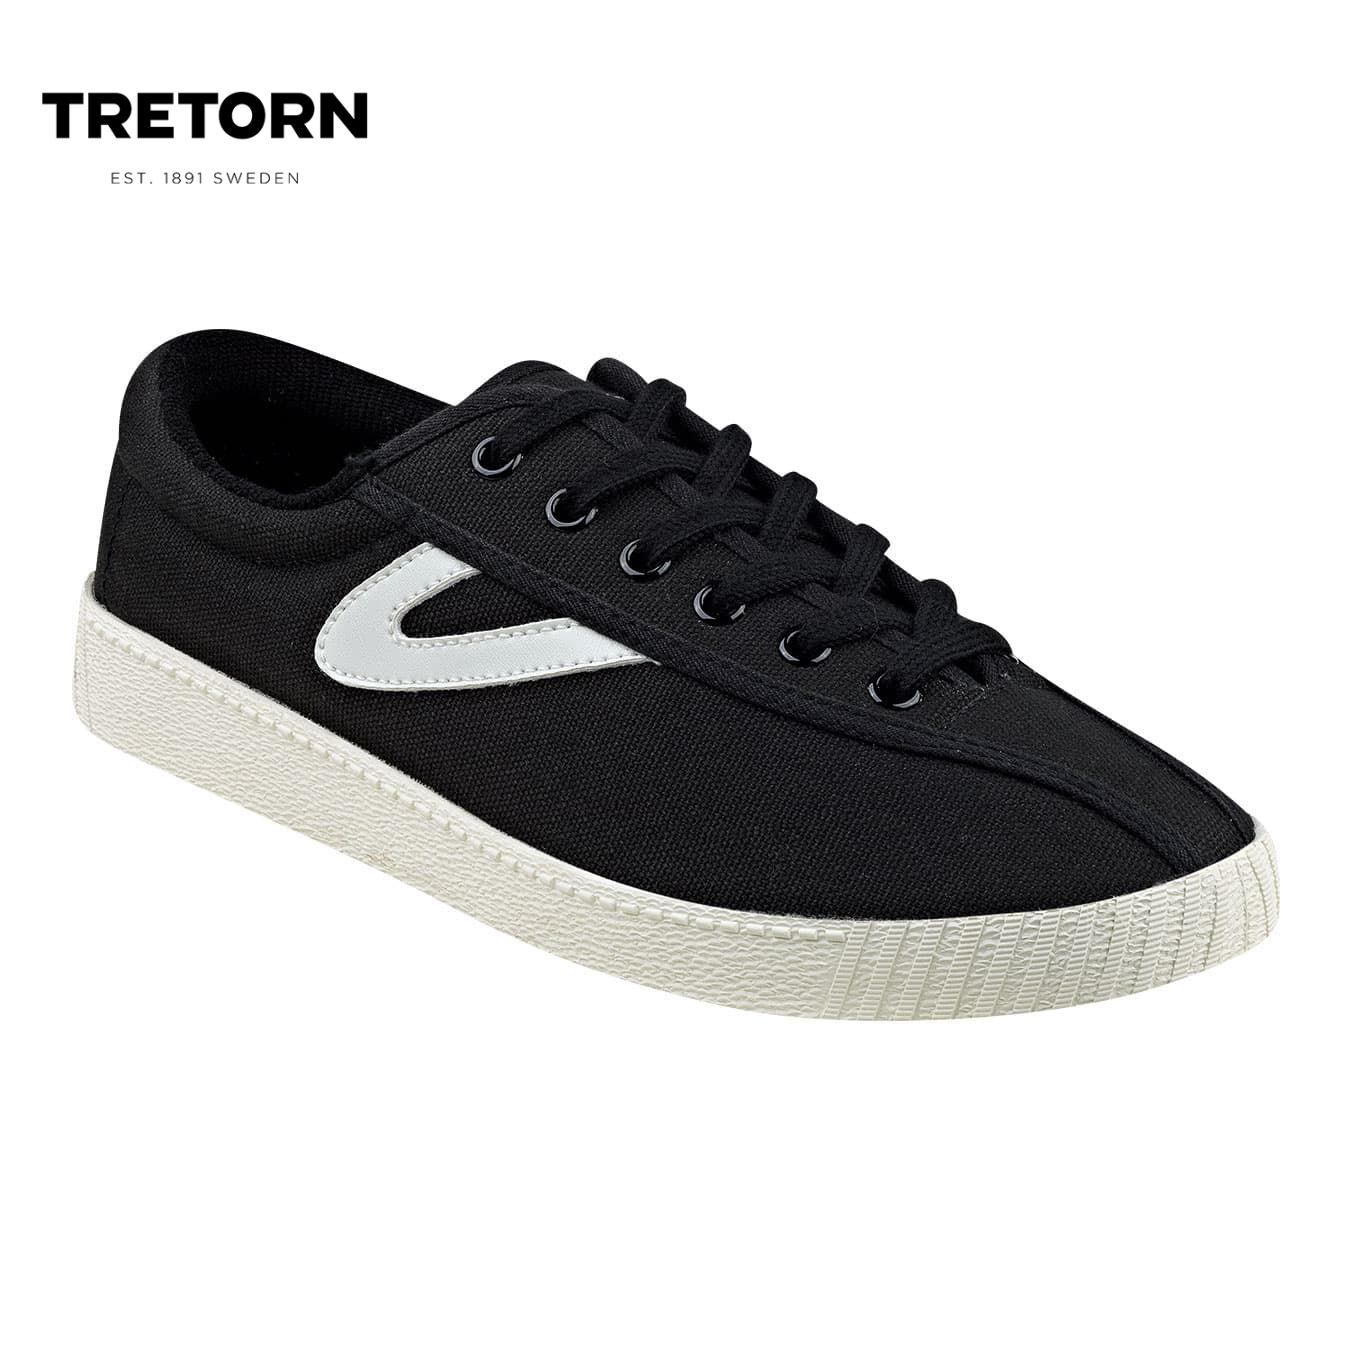 black tretorn shoes